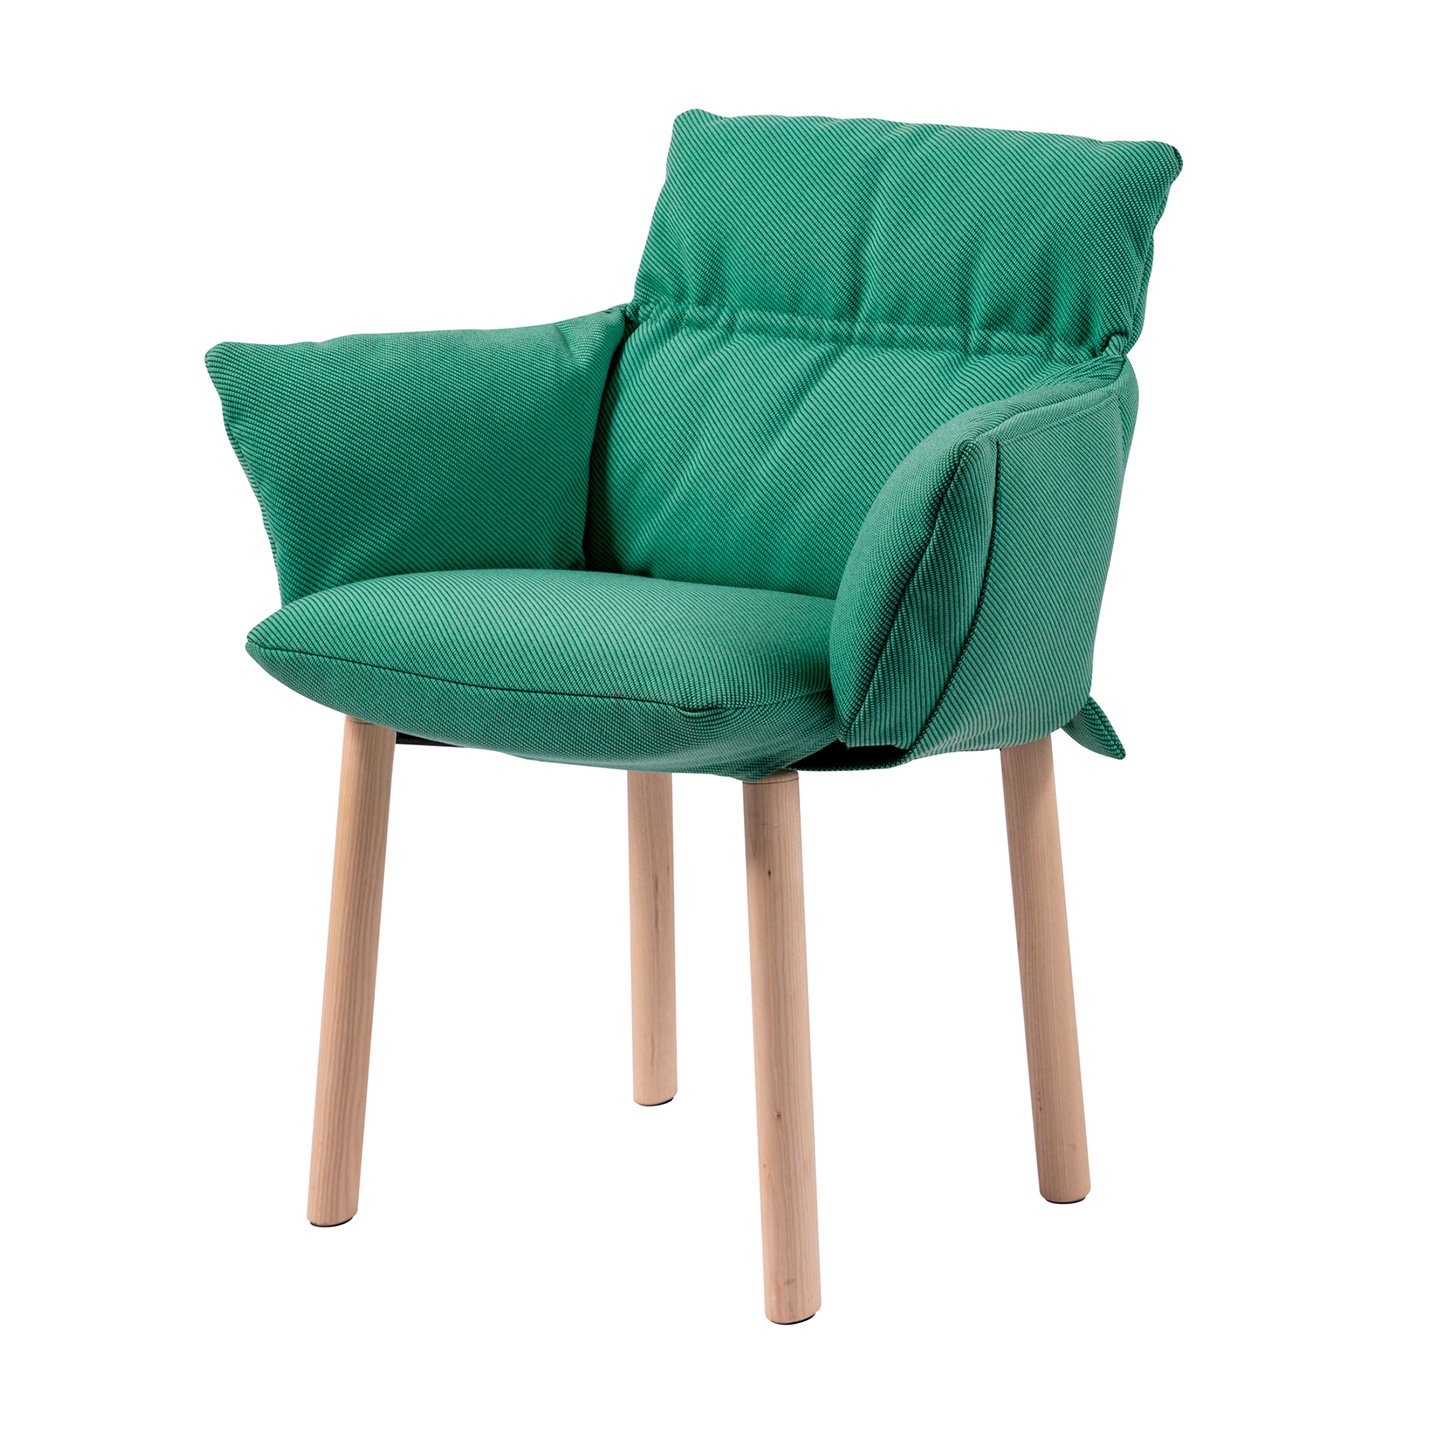 Lud'ina es una silla diseñada para la oficina, un despacho en casala o incluso un salón comedor.